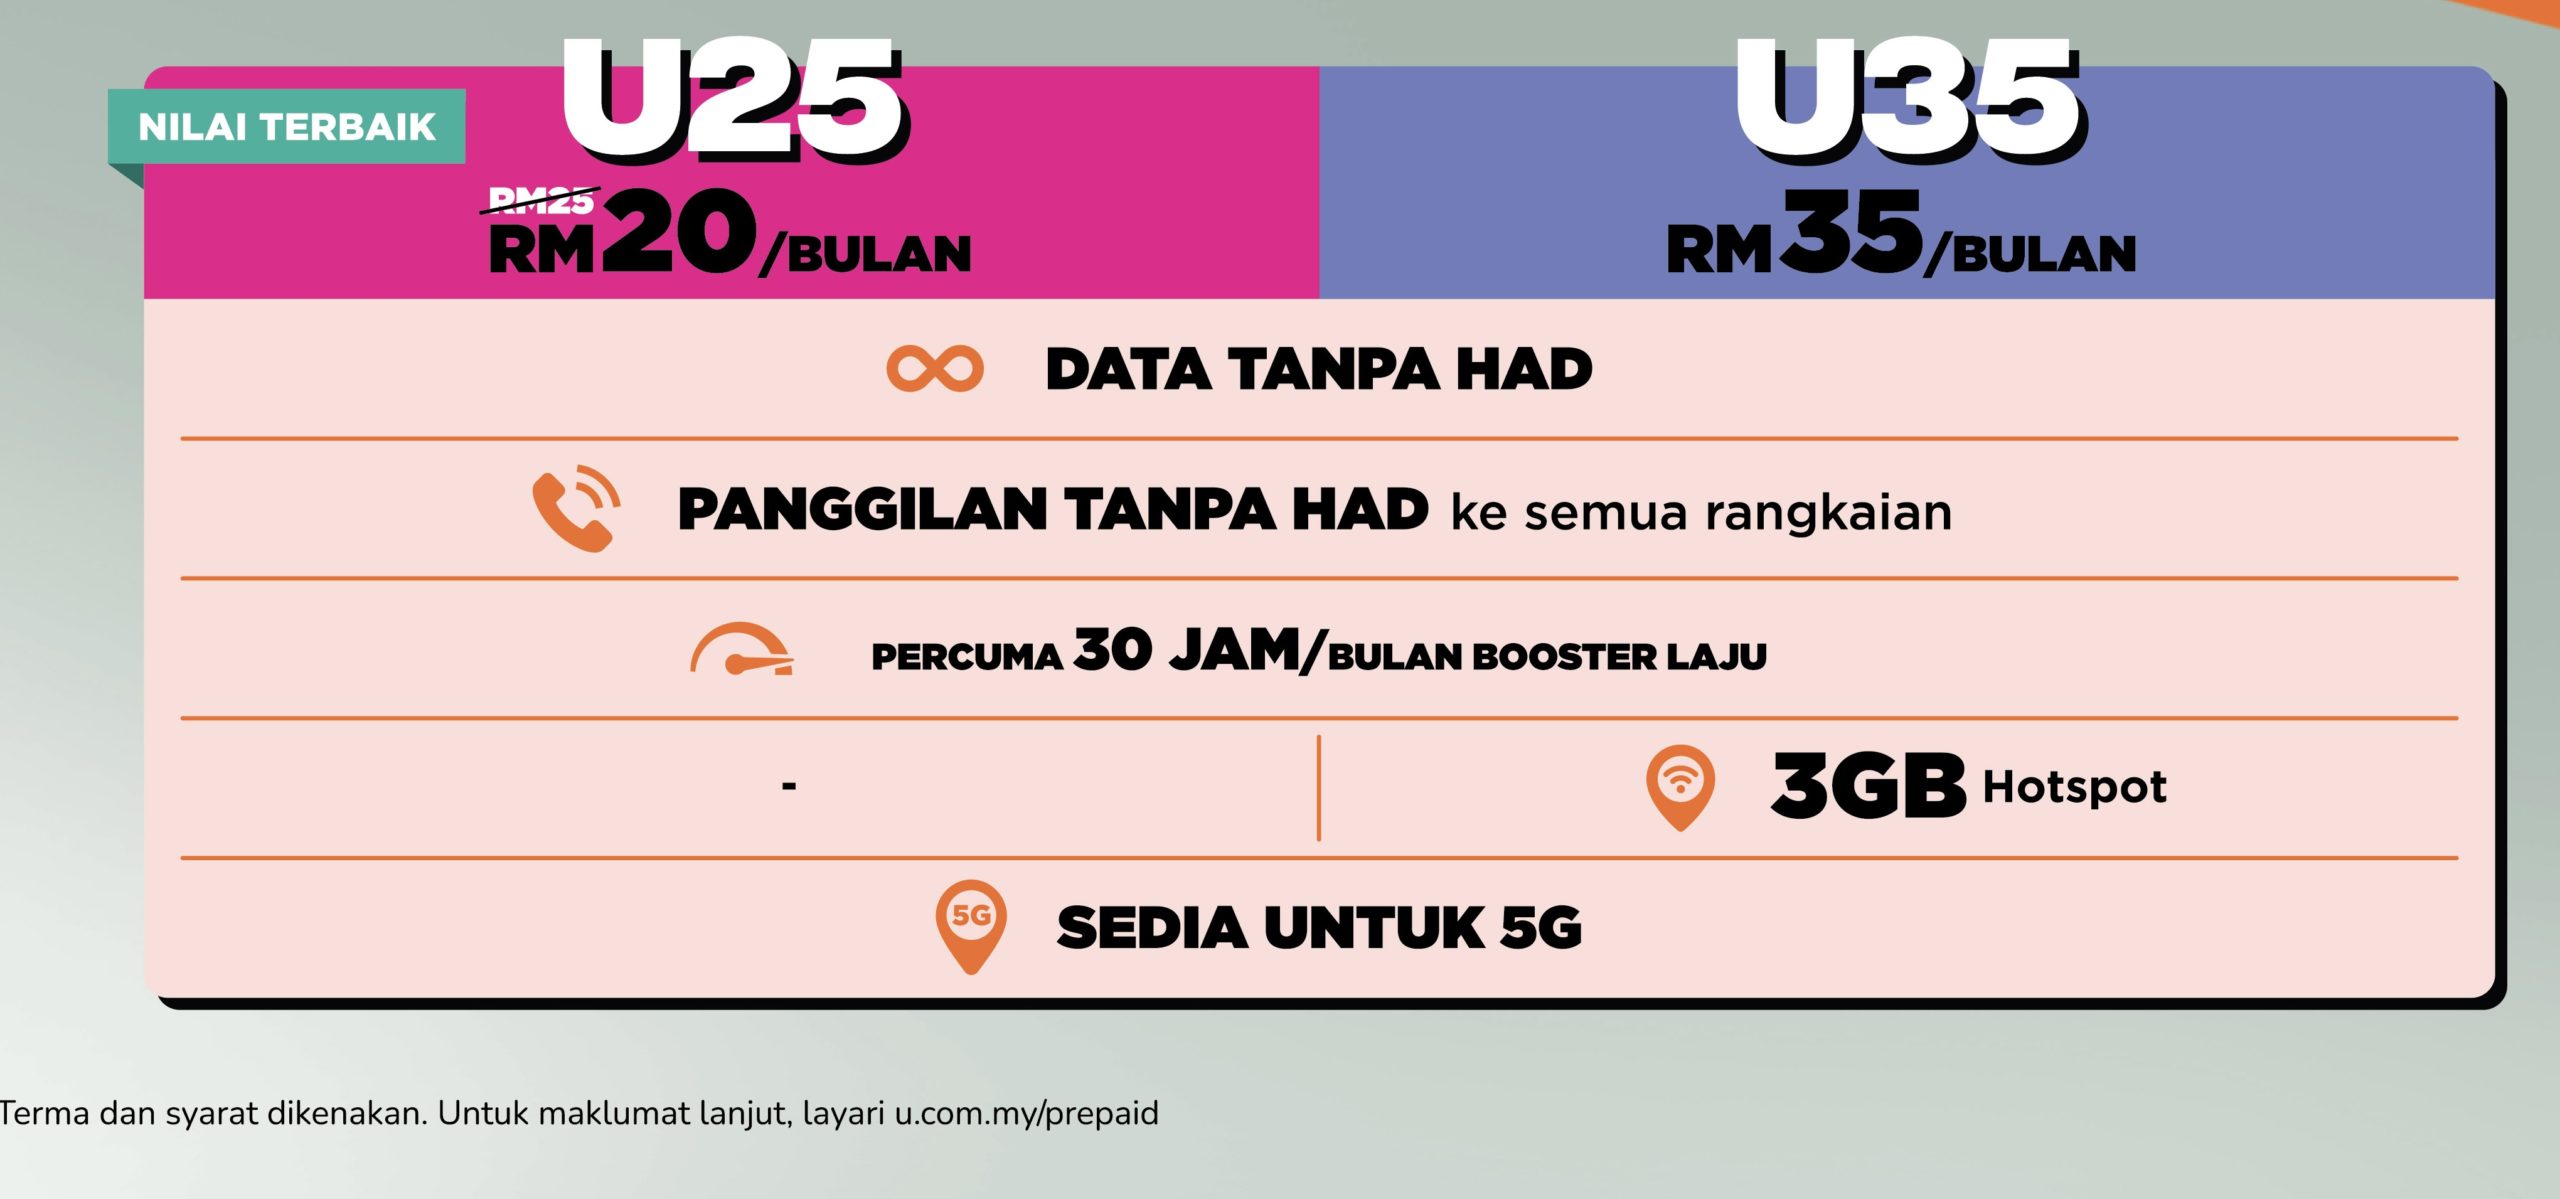 U Mobile lancar pelan prabayar sedia 5G pada harga dari RM 20 sebulan 6